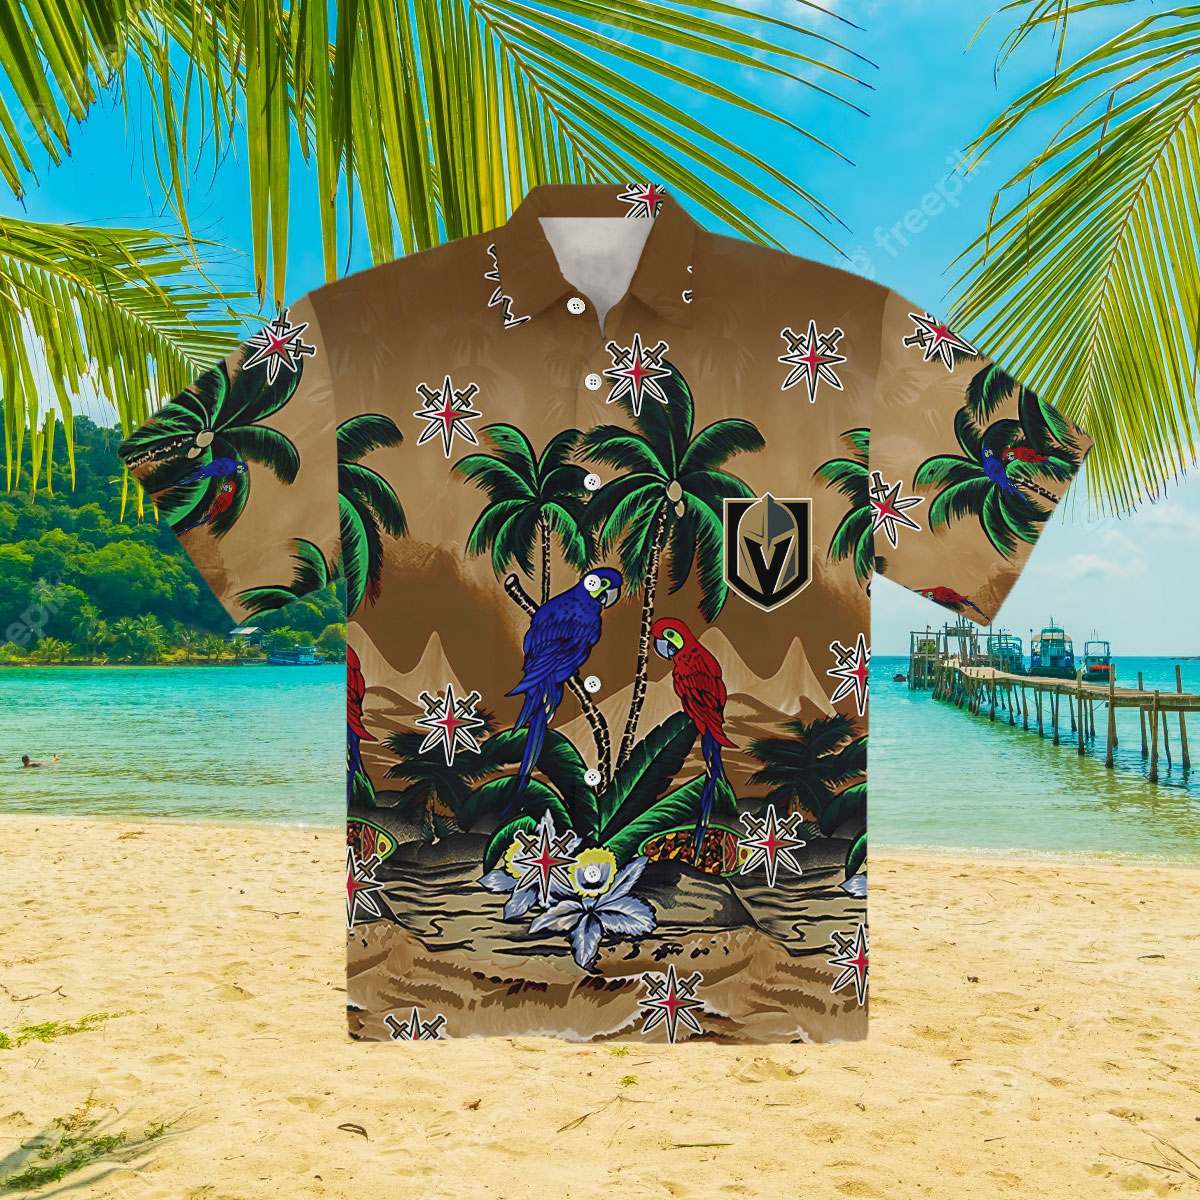 Endastore Vegas Golden Knights Hawaiian Shirt